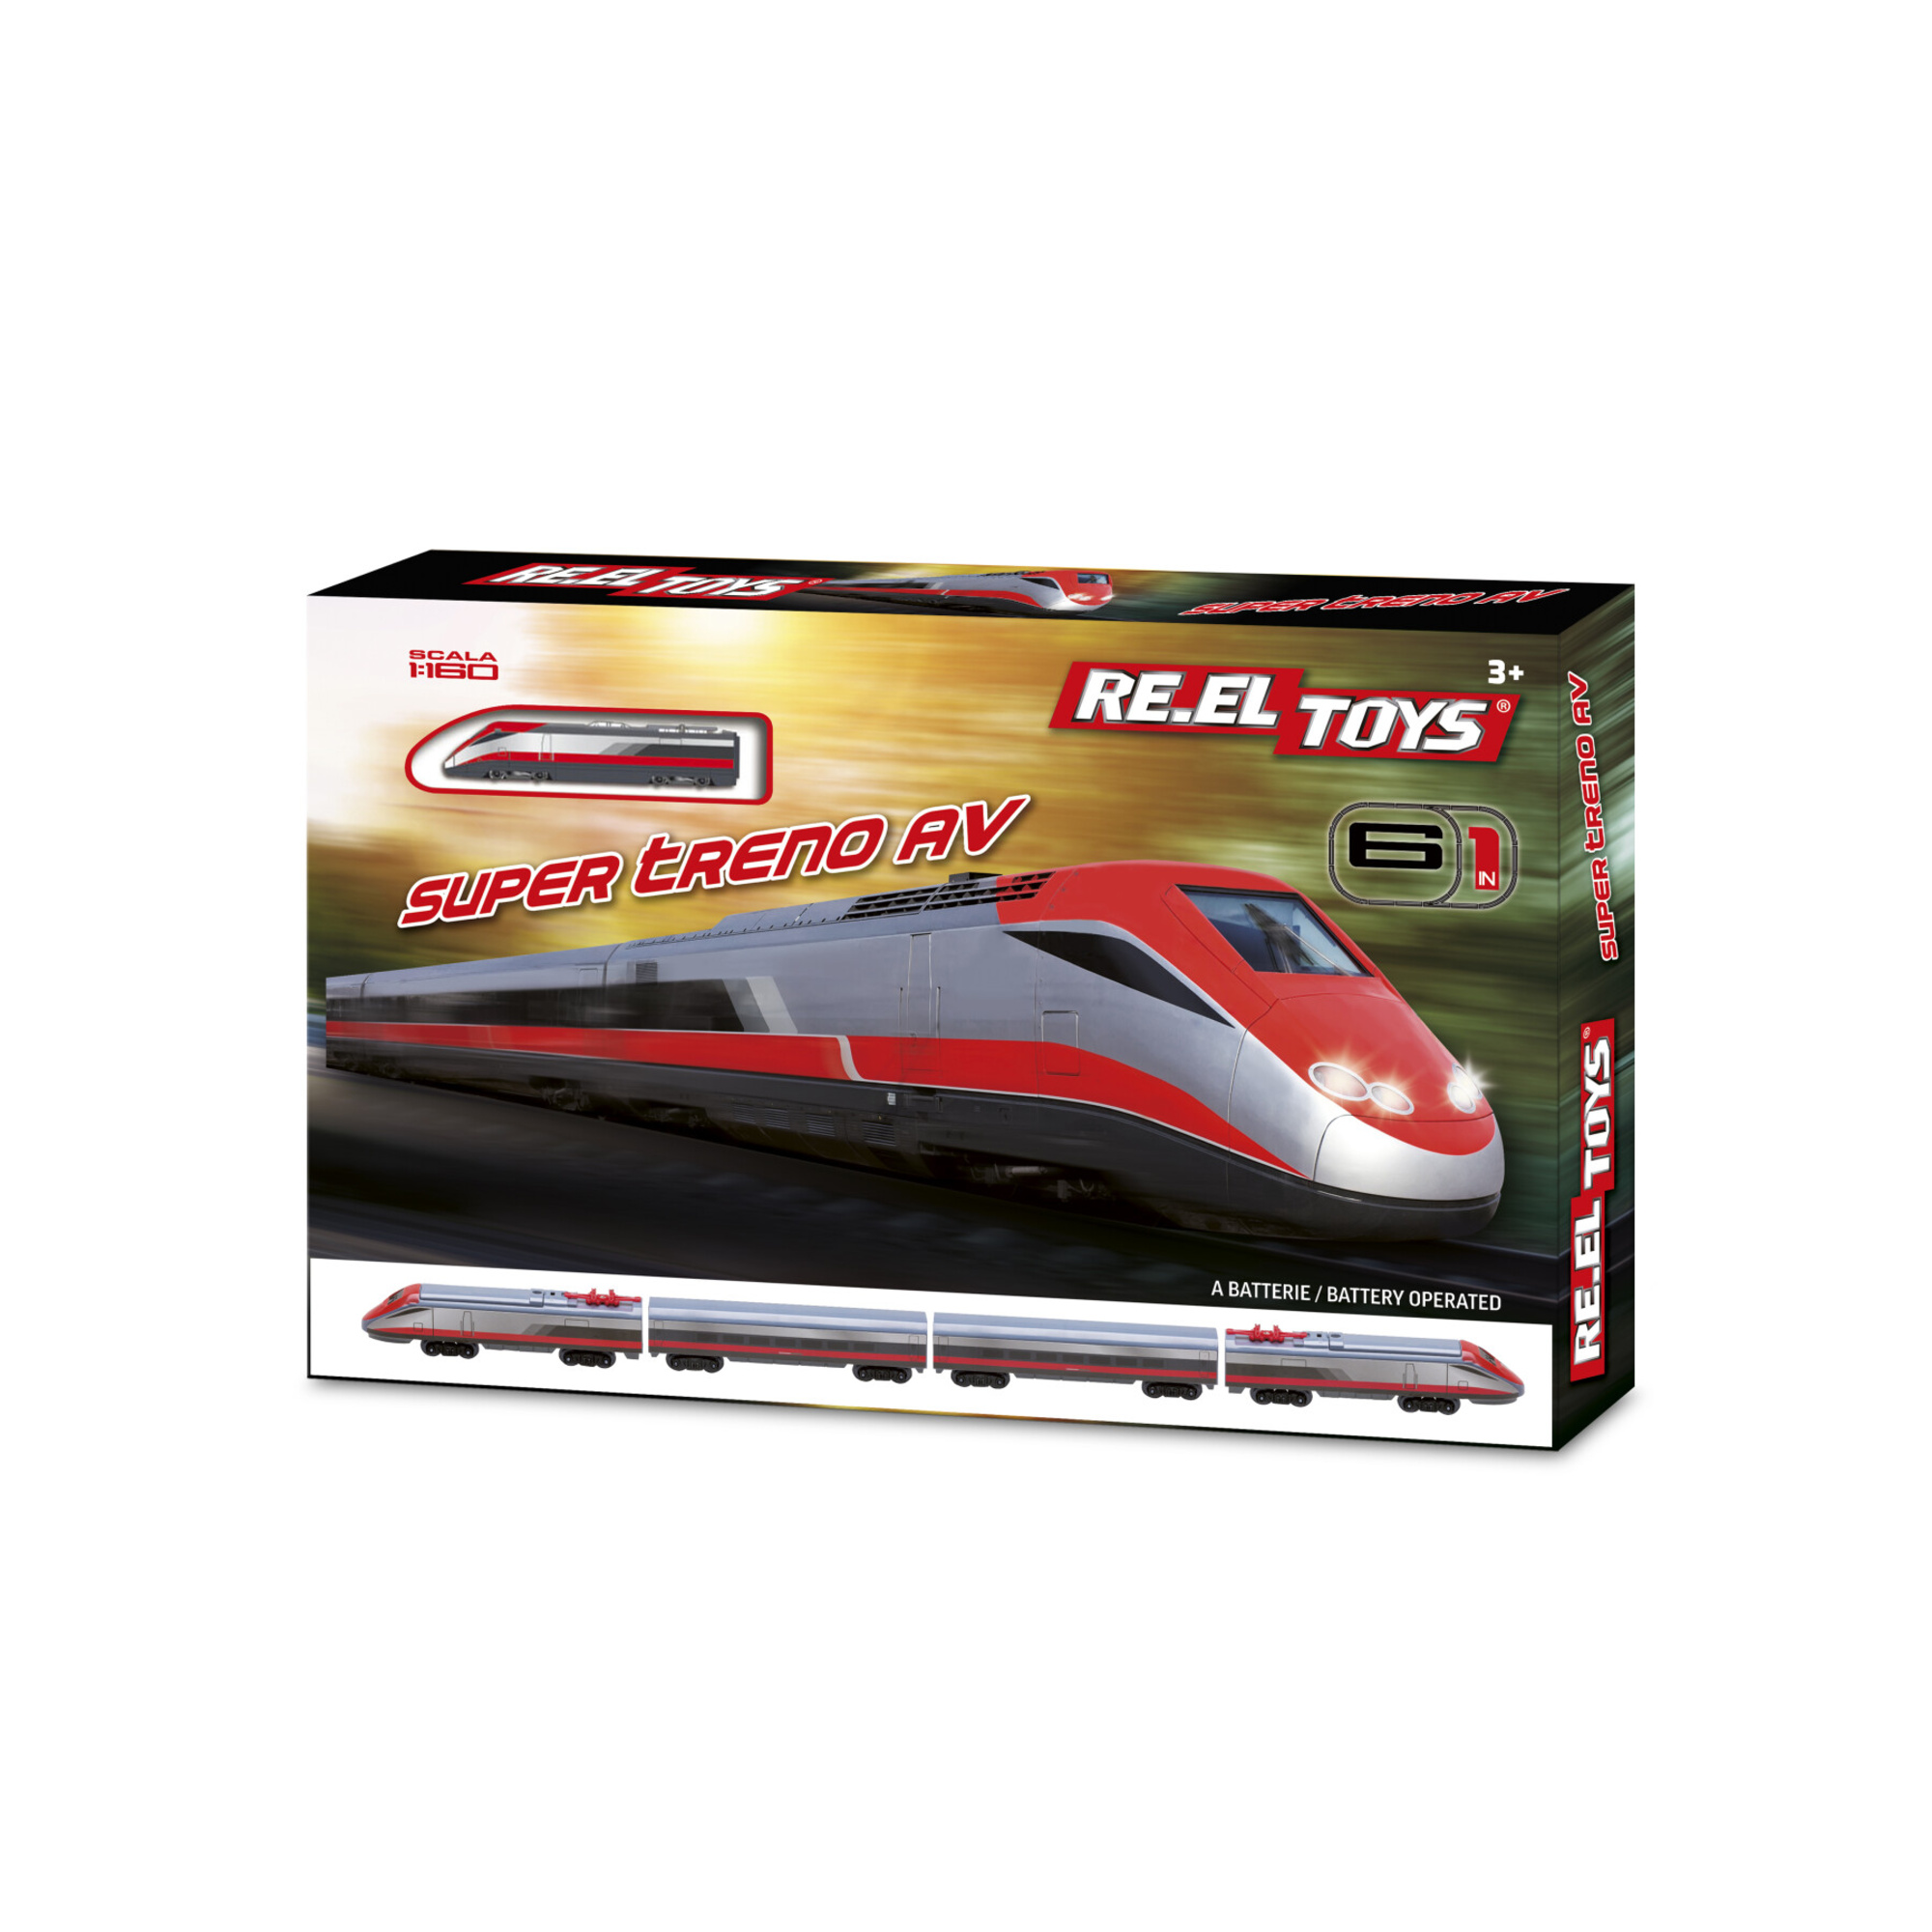 Super treno av: treno a batterie, sc.1:160. 3+, composto da 2 motrici (una sola trainante) + 2 vagoni. 6 tracciati possibili. - 